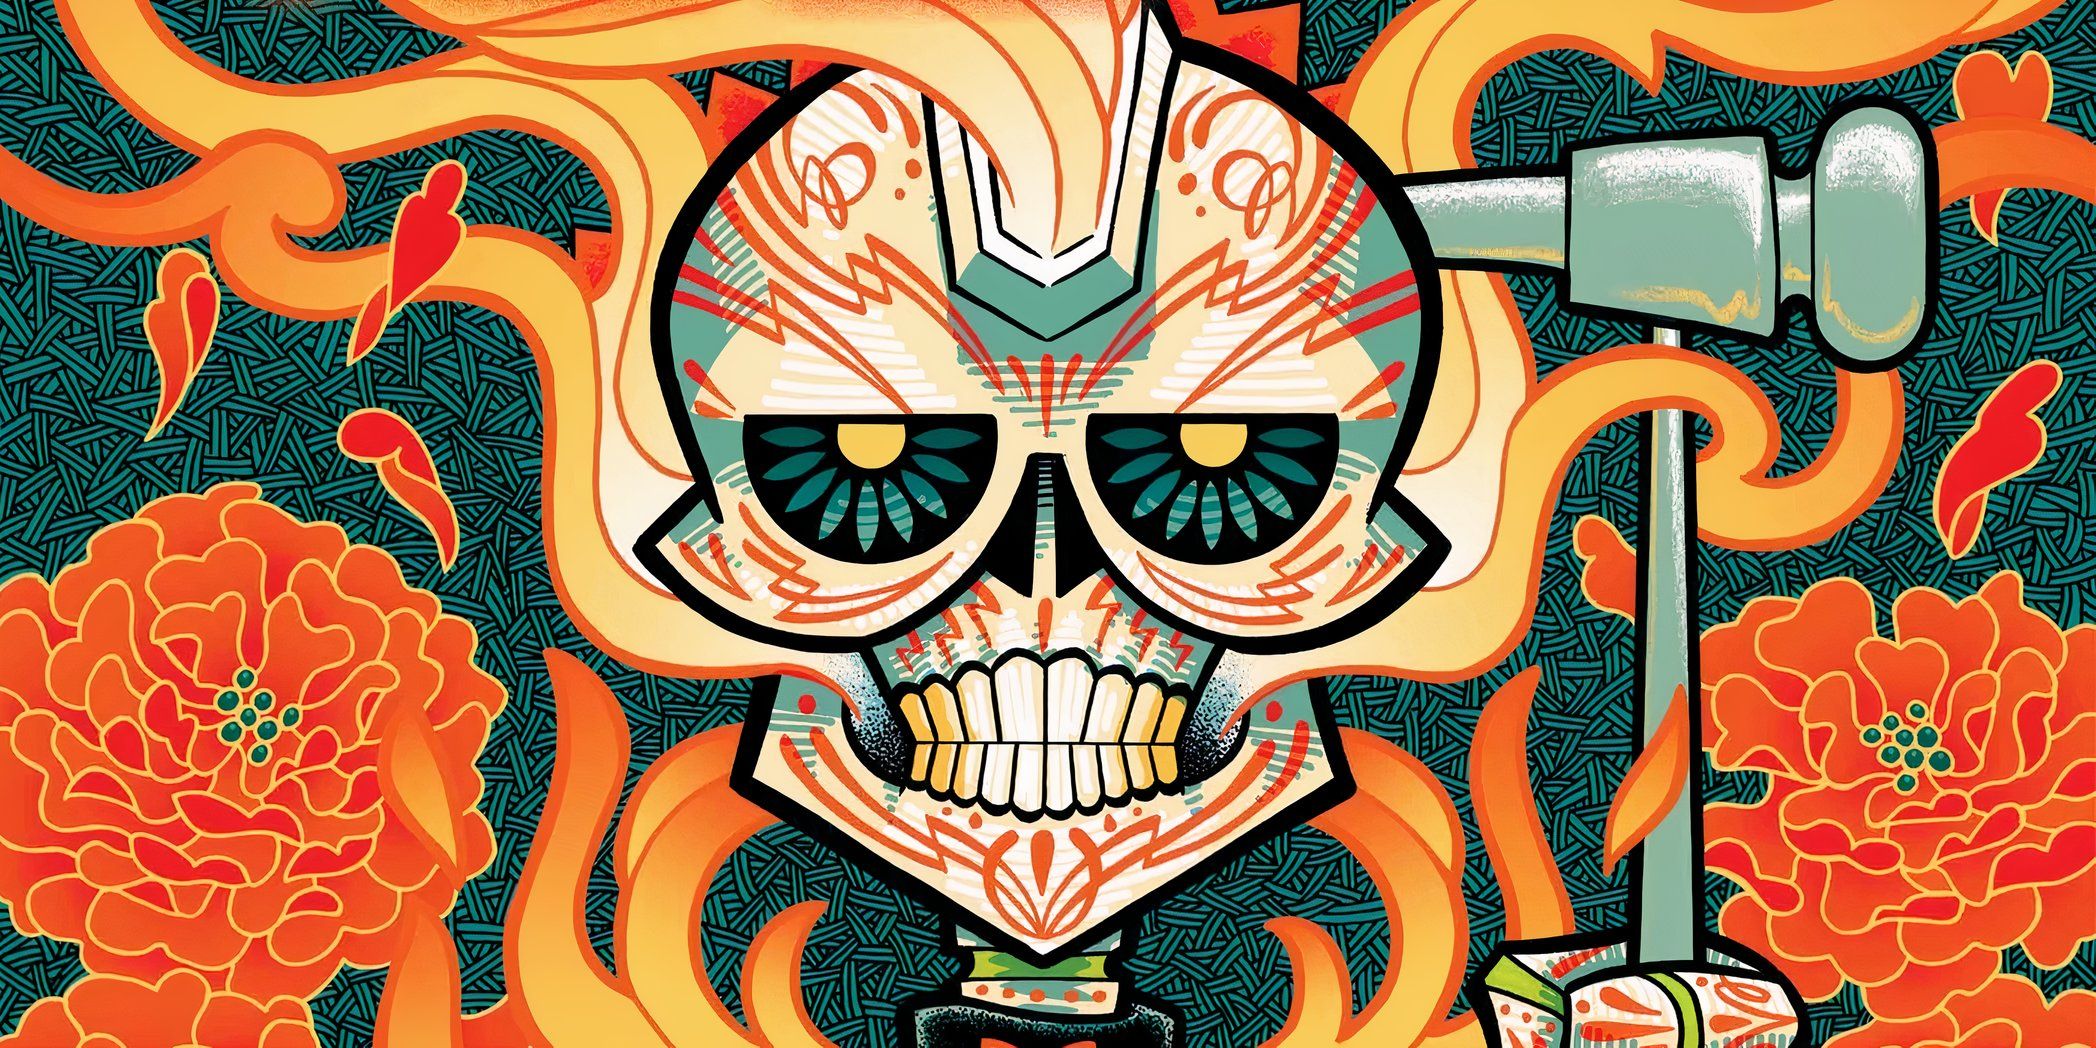 "¡Mi primera portada de Marvel!: El asombroso arte de Ghost Rider podría ser el debut más atrevido de Marvel hasta ahora"